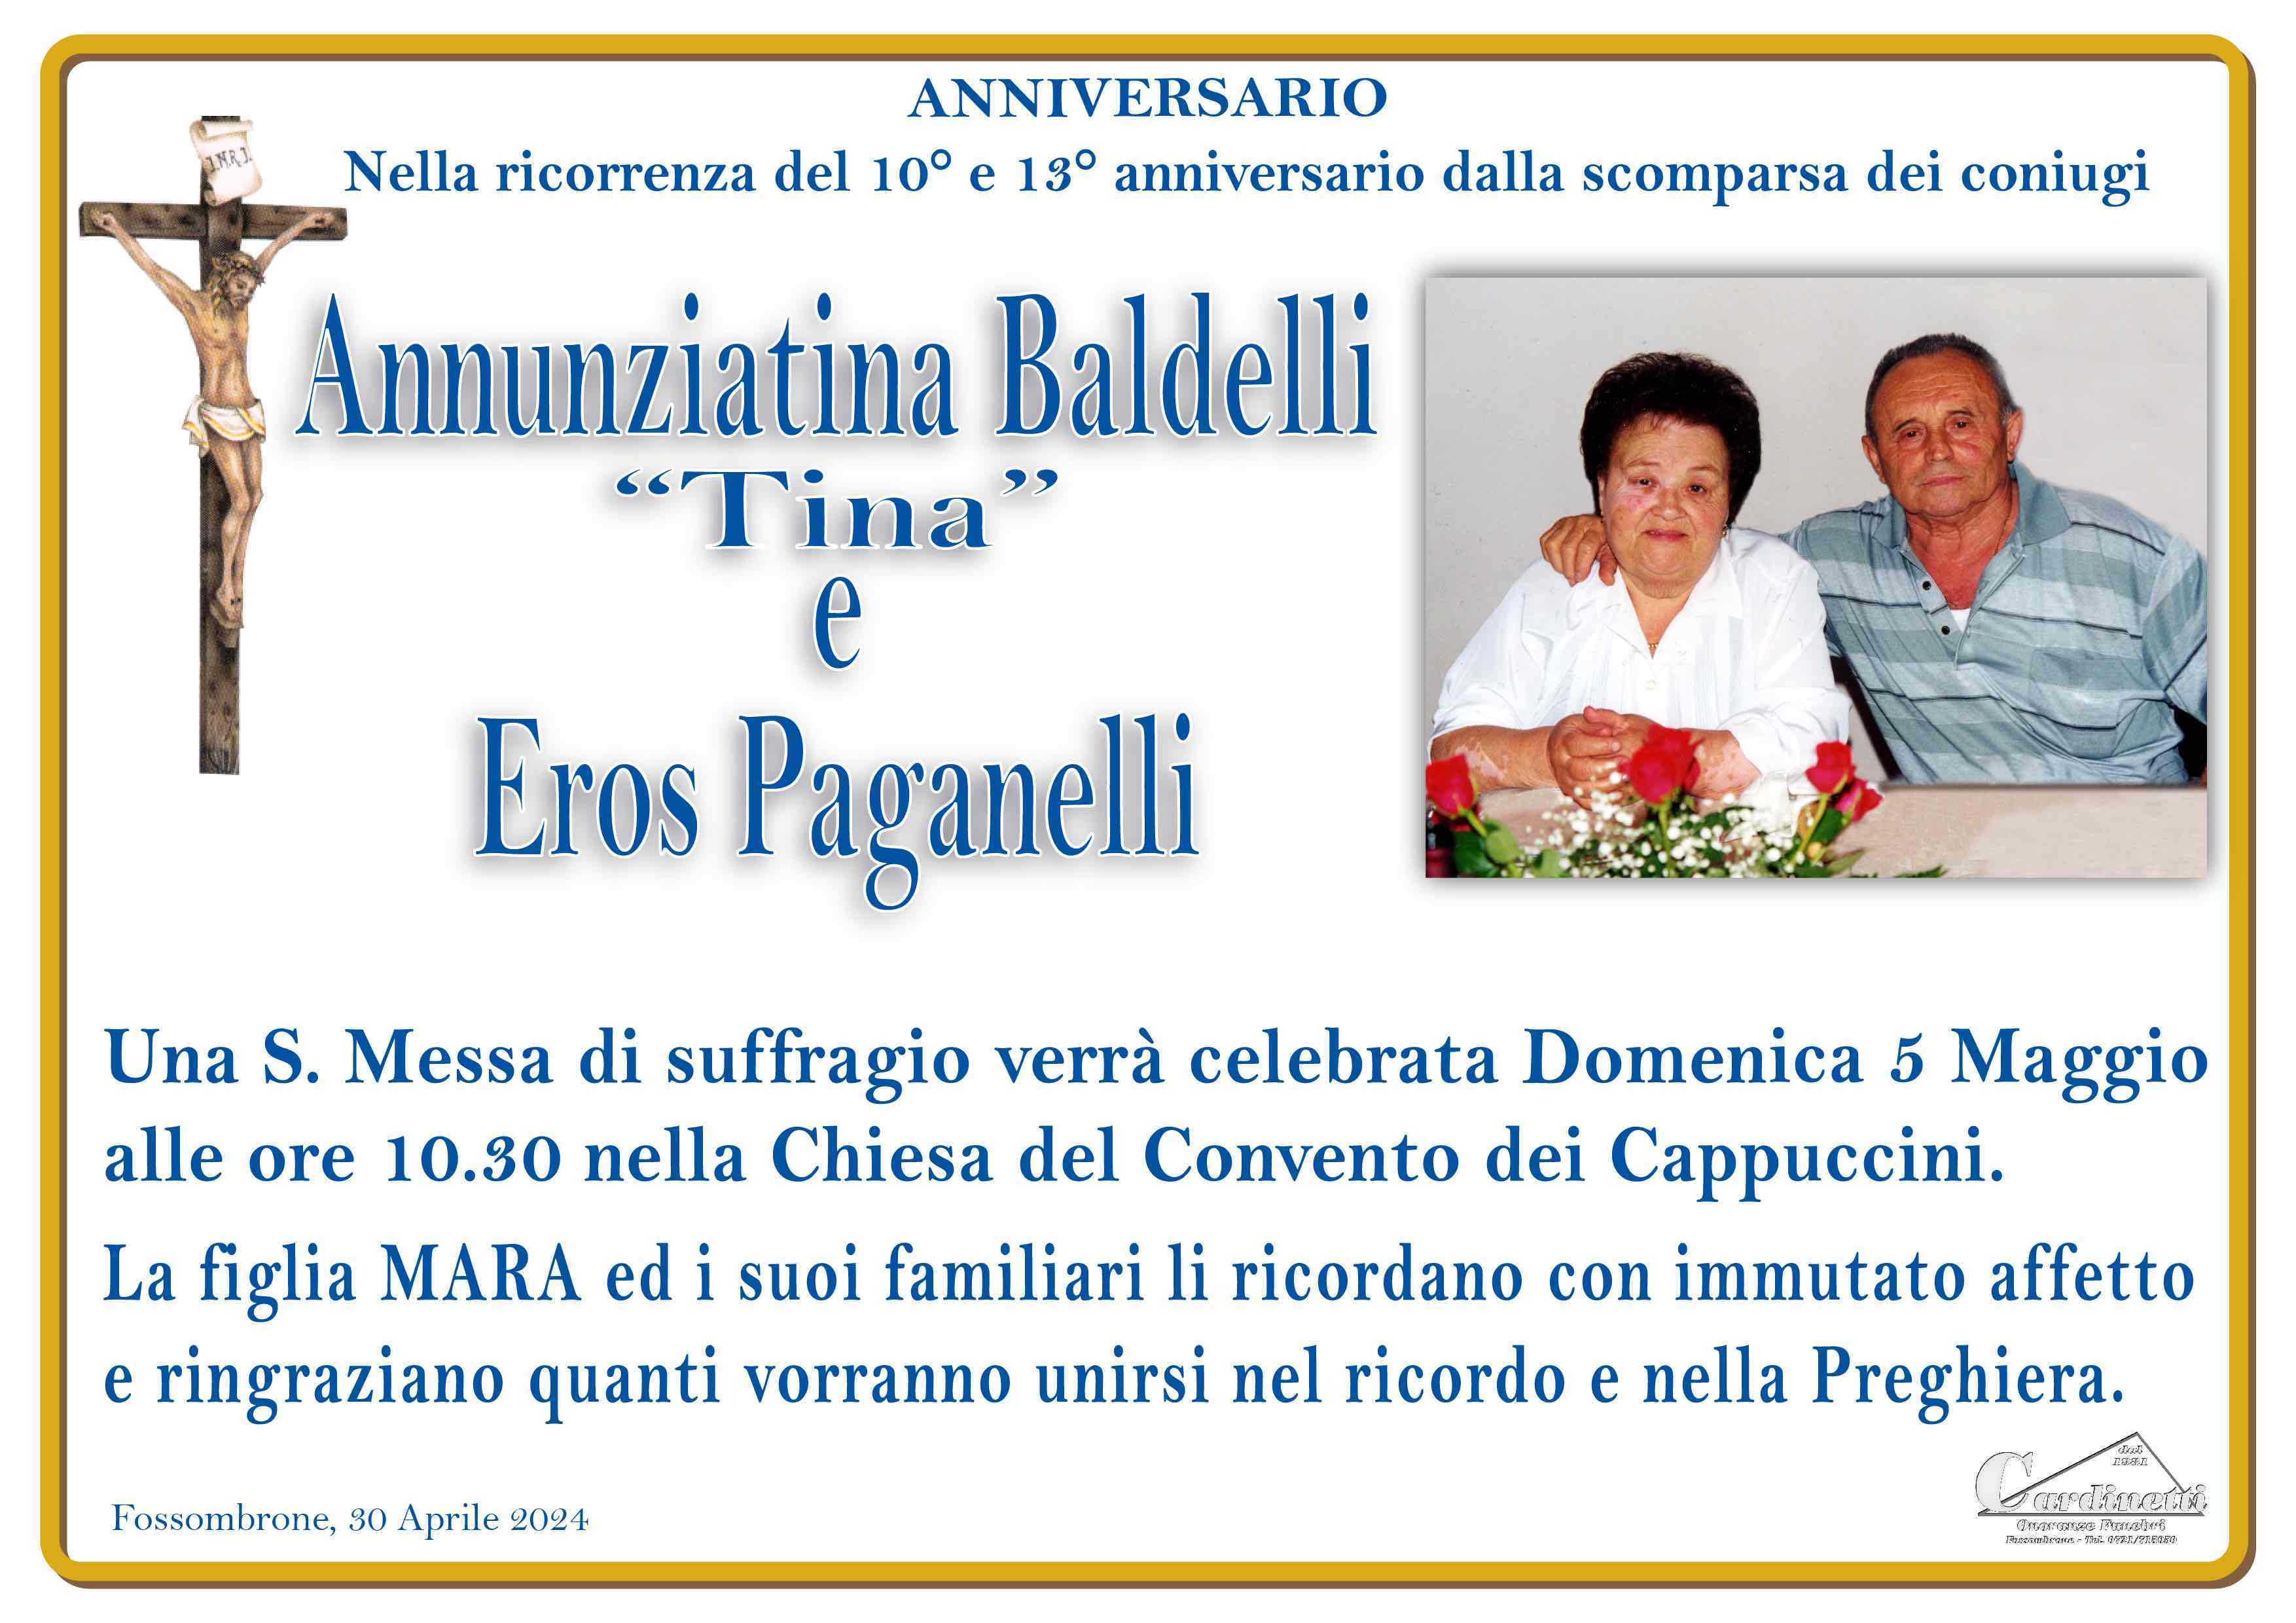 Annunziatina Baldelli e Eros Paganelli